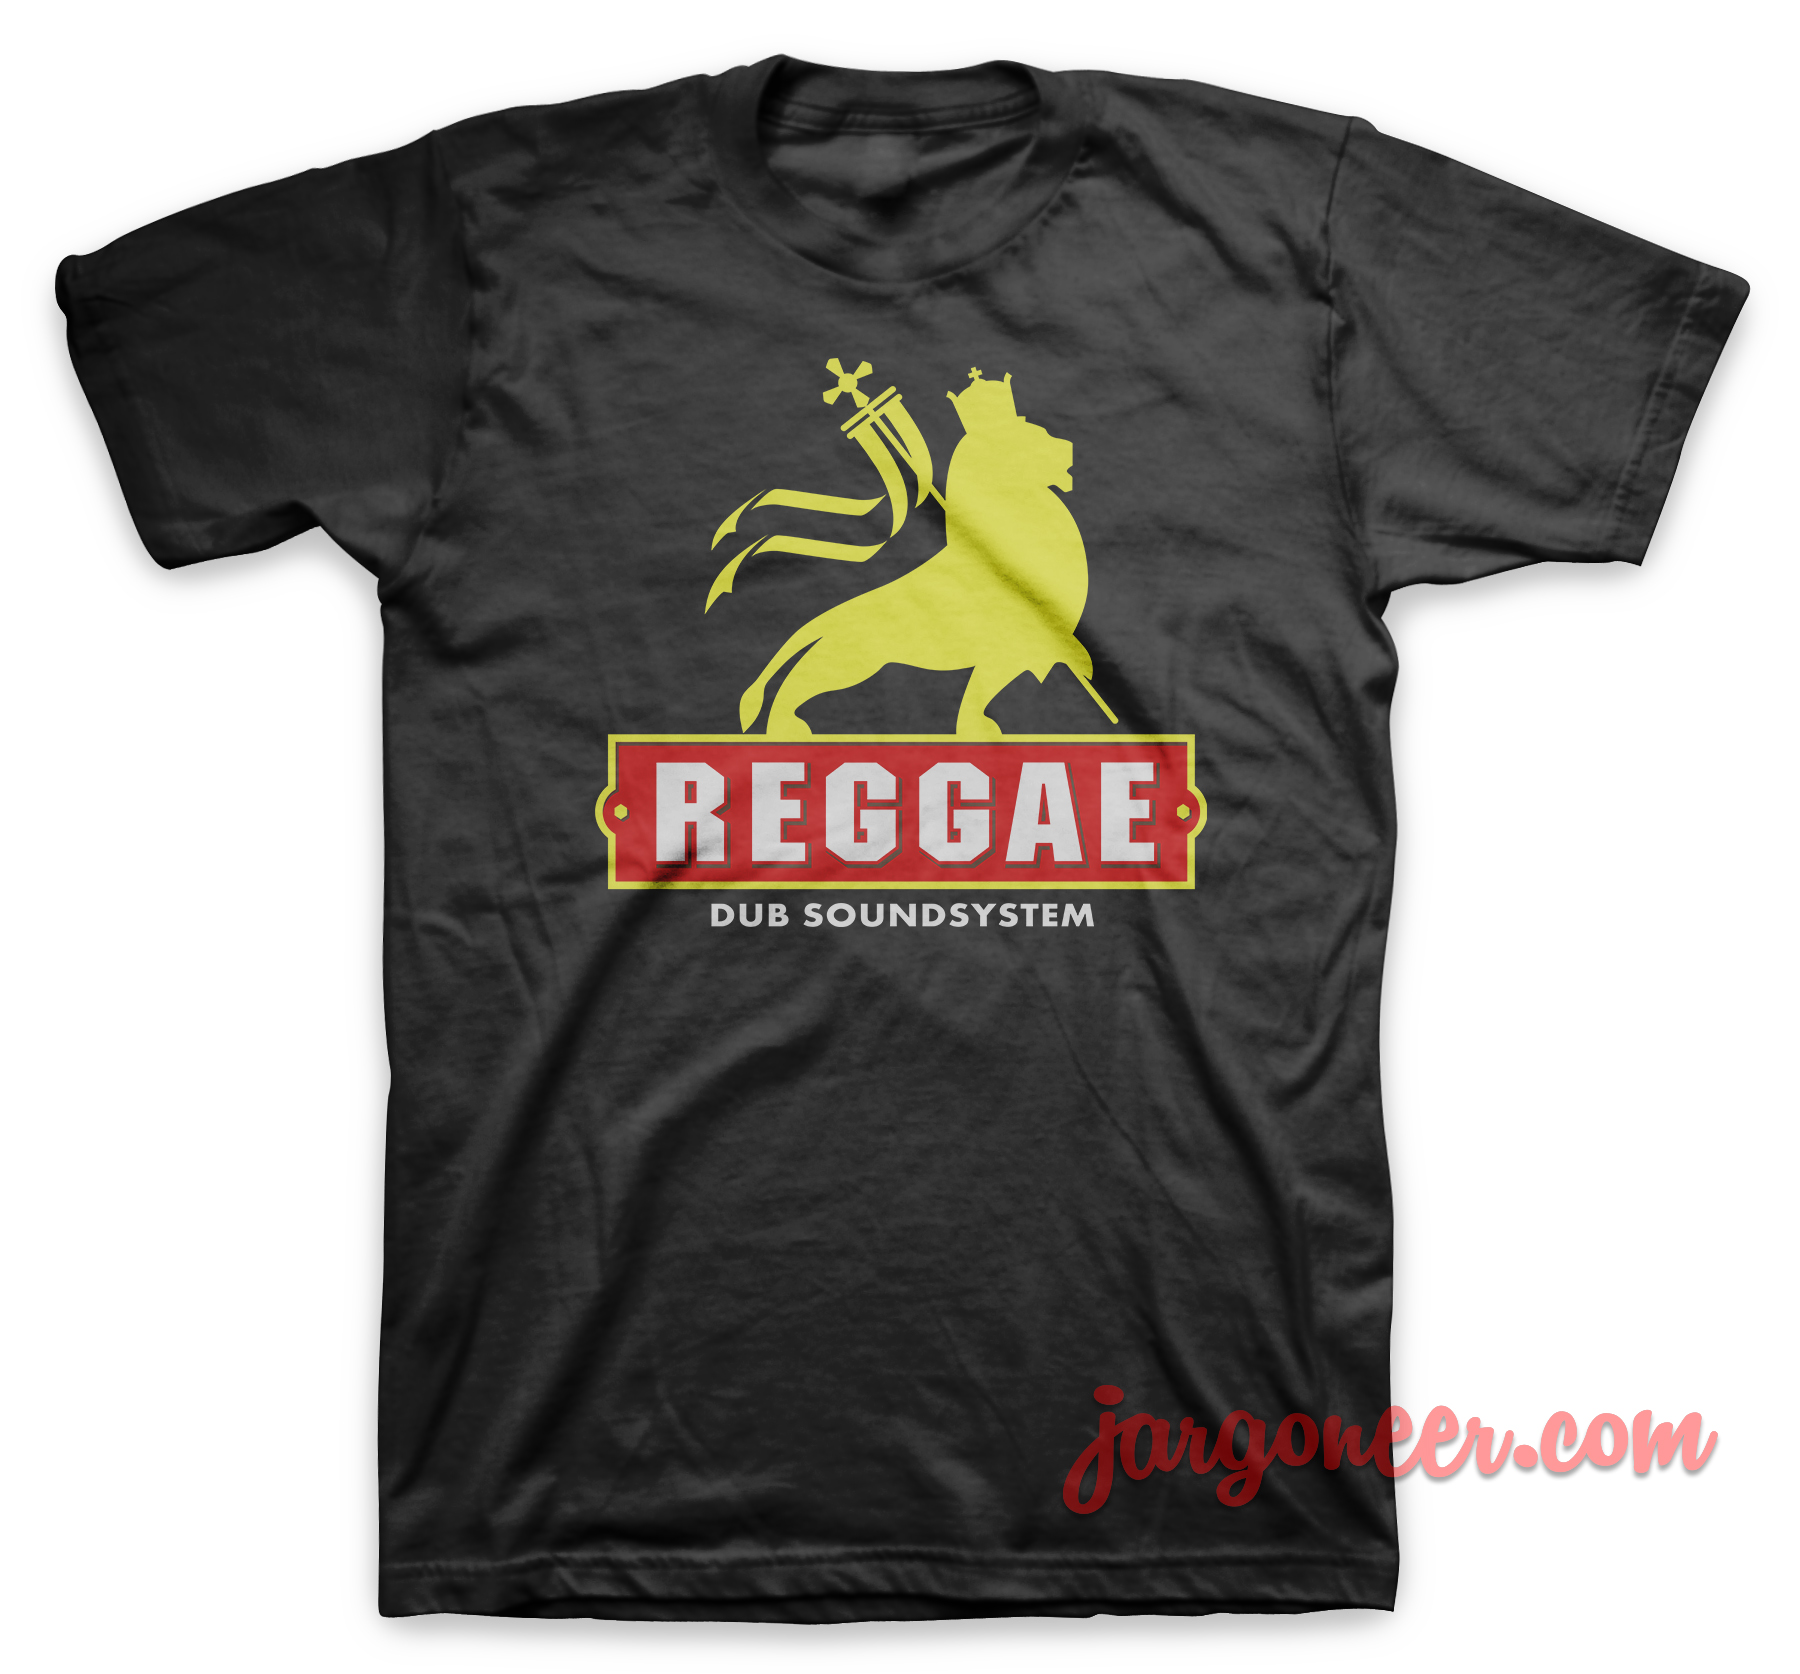 Reggae Dub Soundsystem Black T Shirt - Shop Unique Graphic Cool Shirt Designs